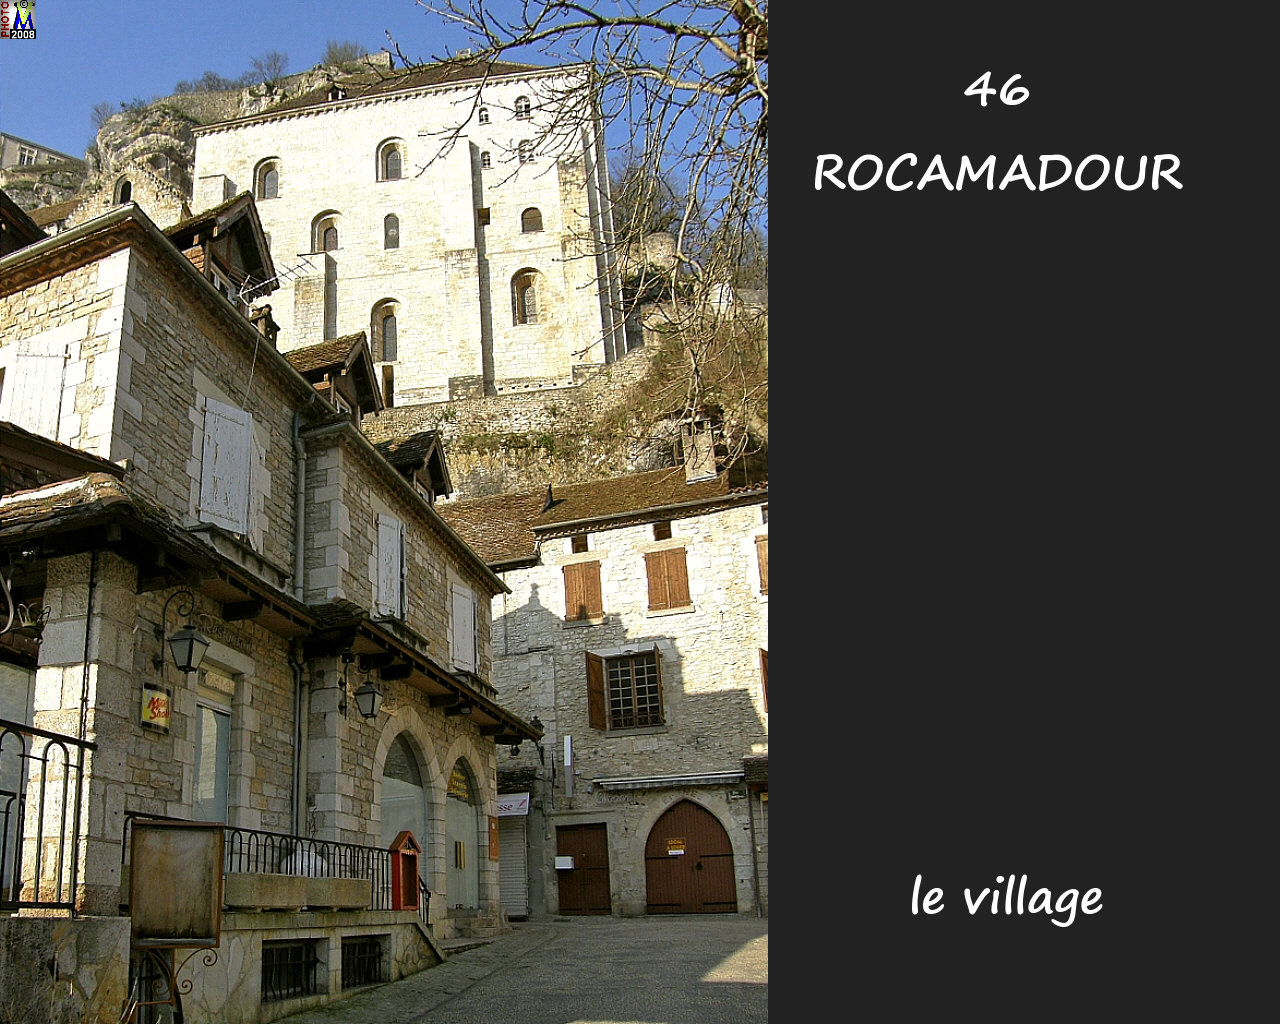 46ROCAMADOUR_village_146.jpg